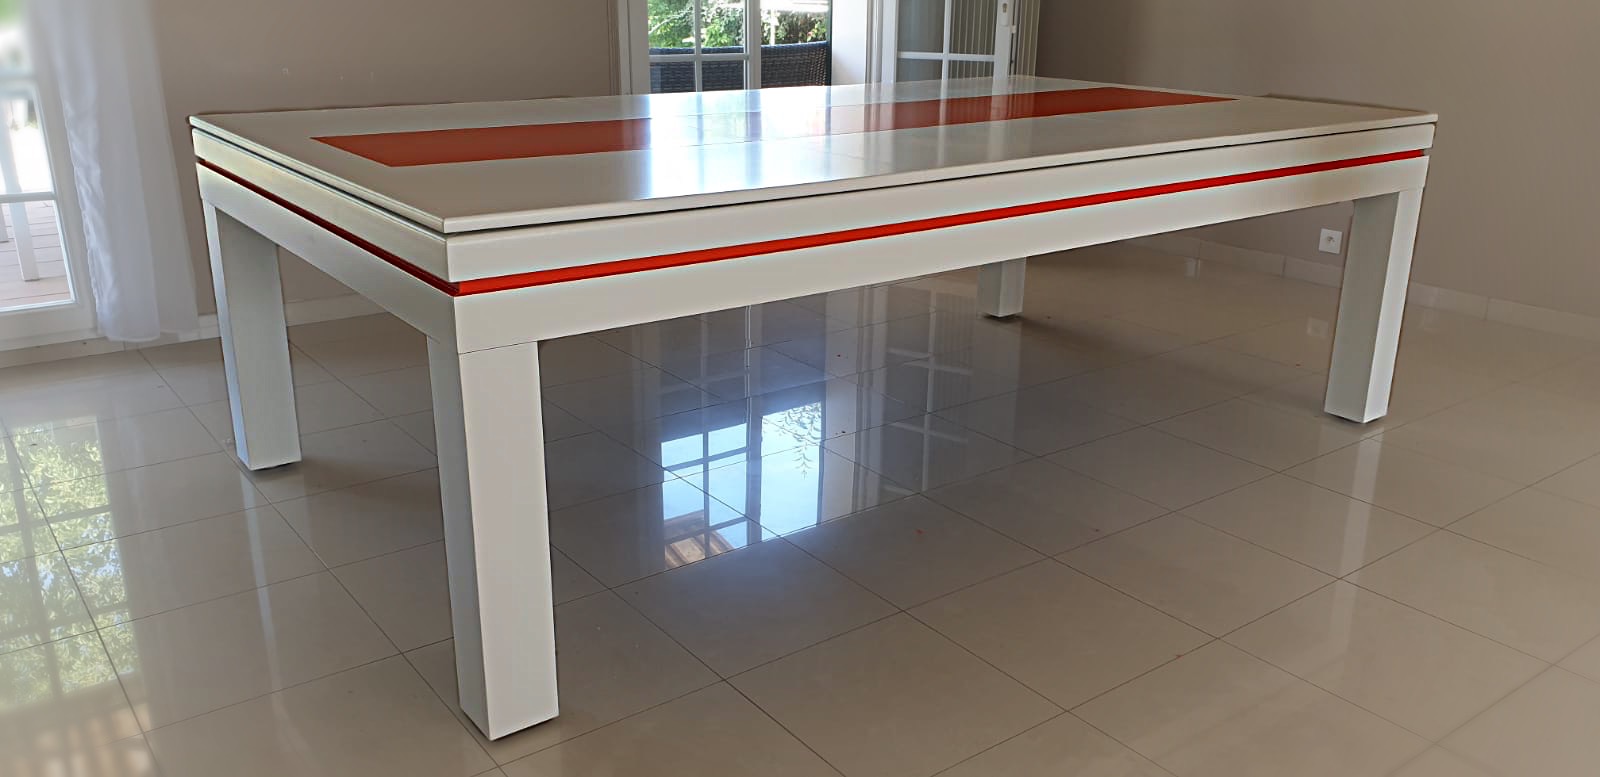 Billard transformé en table design à deux couleur. Le cadre blanc est souligné d'un liseré orange, tandis que le plateau blanc est habillé d'un décor centrale orange.